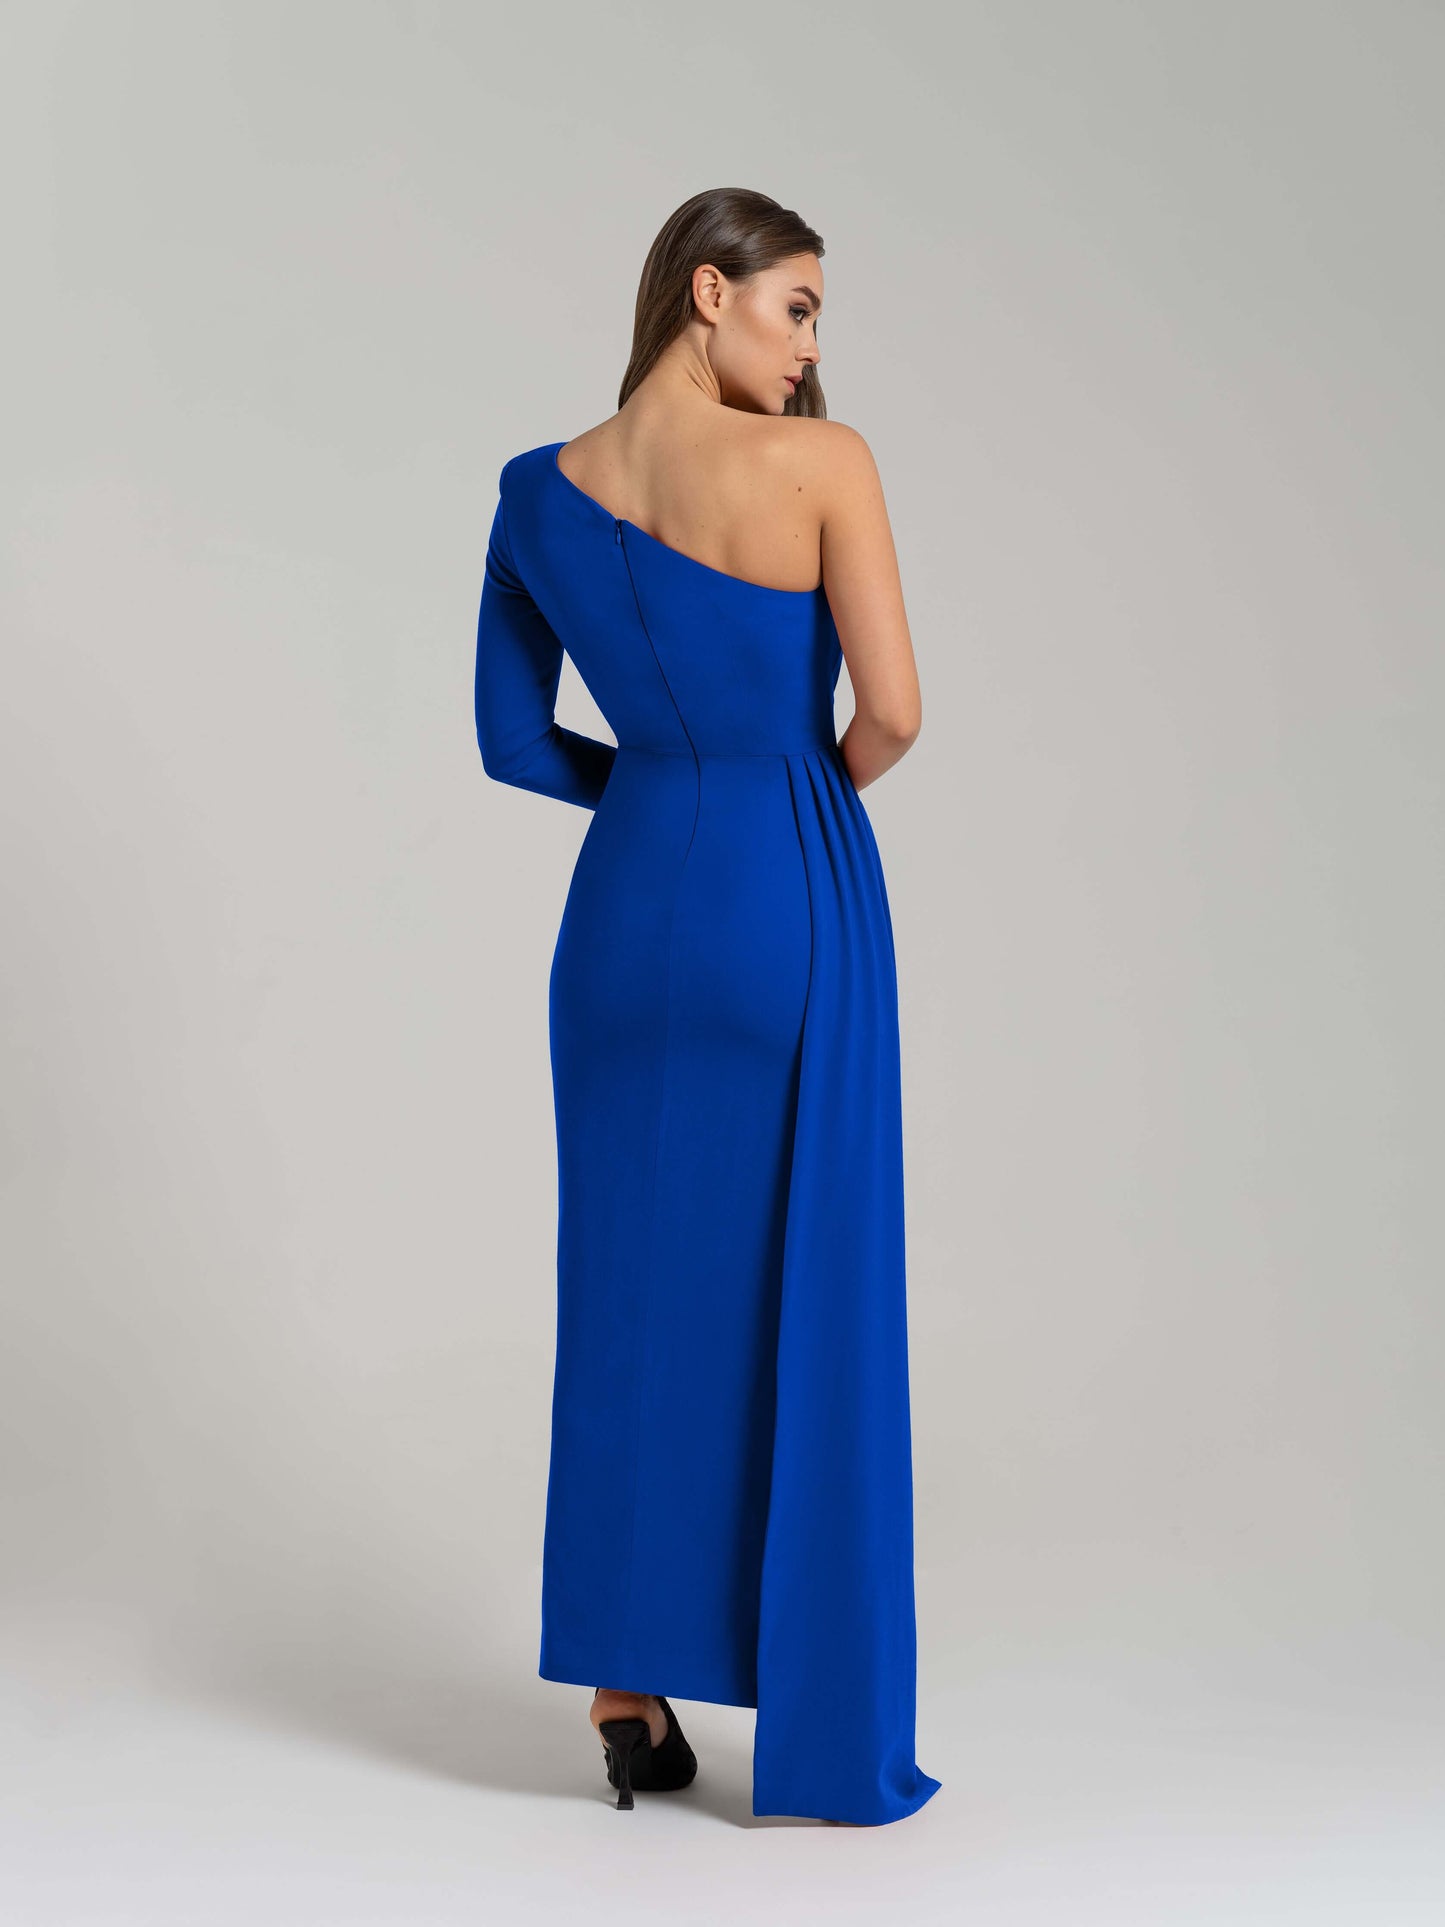 Iconic Glamour Draped Long Dress - Azure Blue